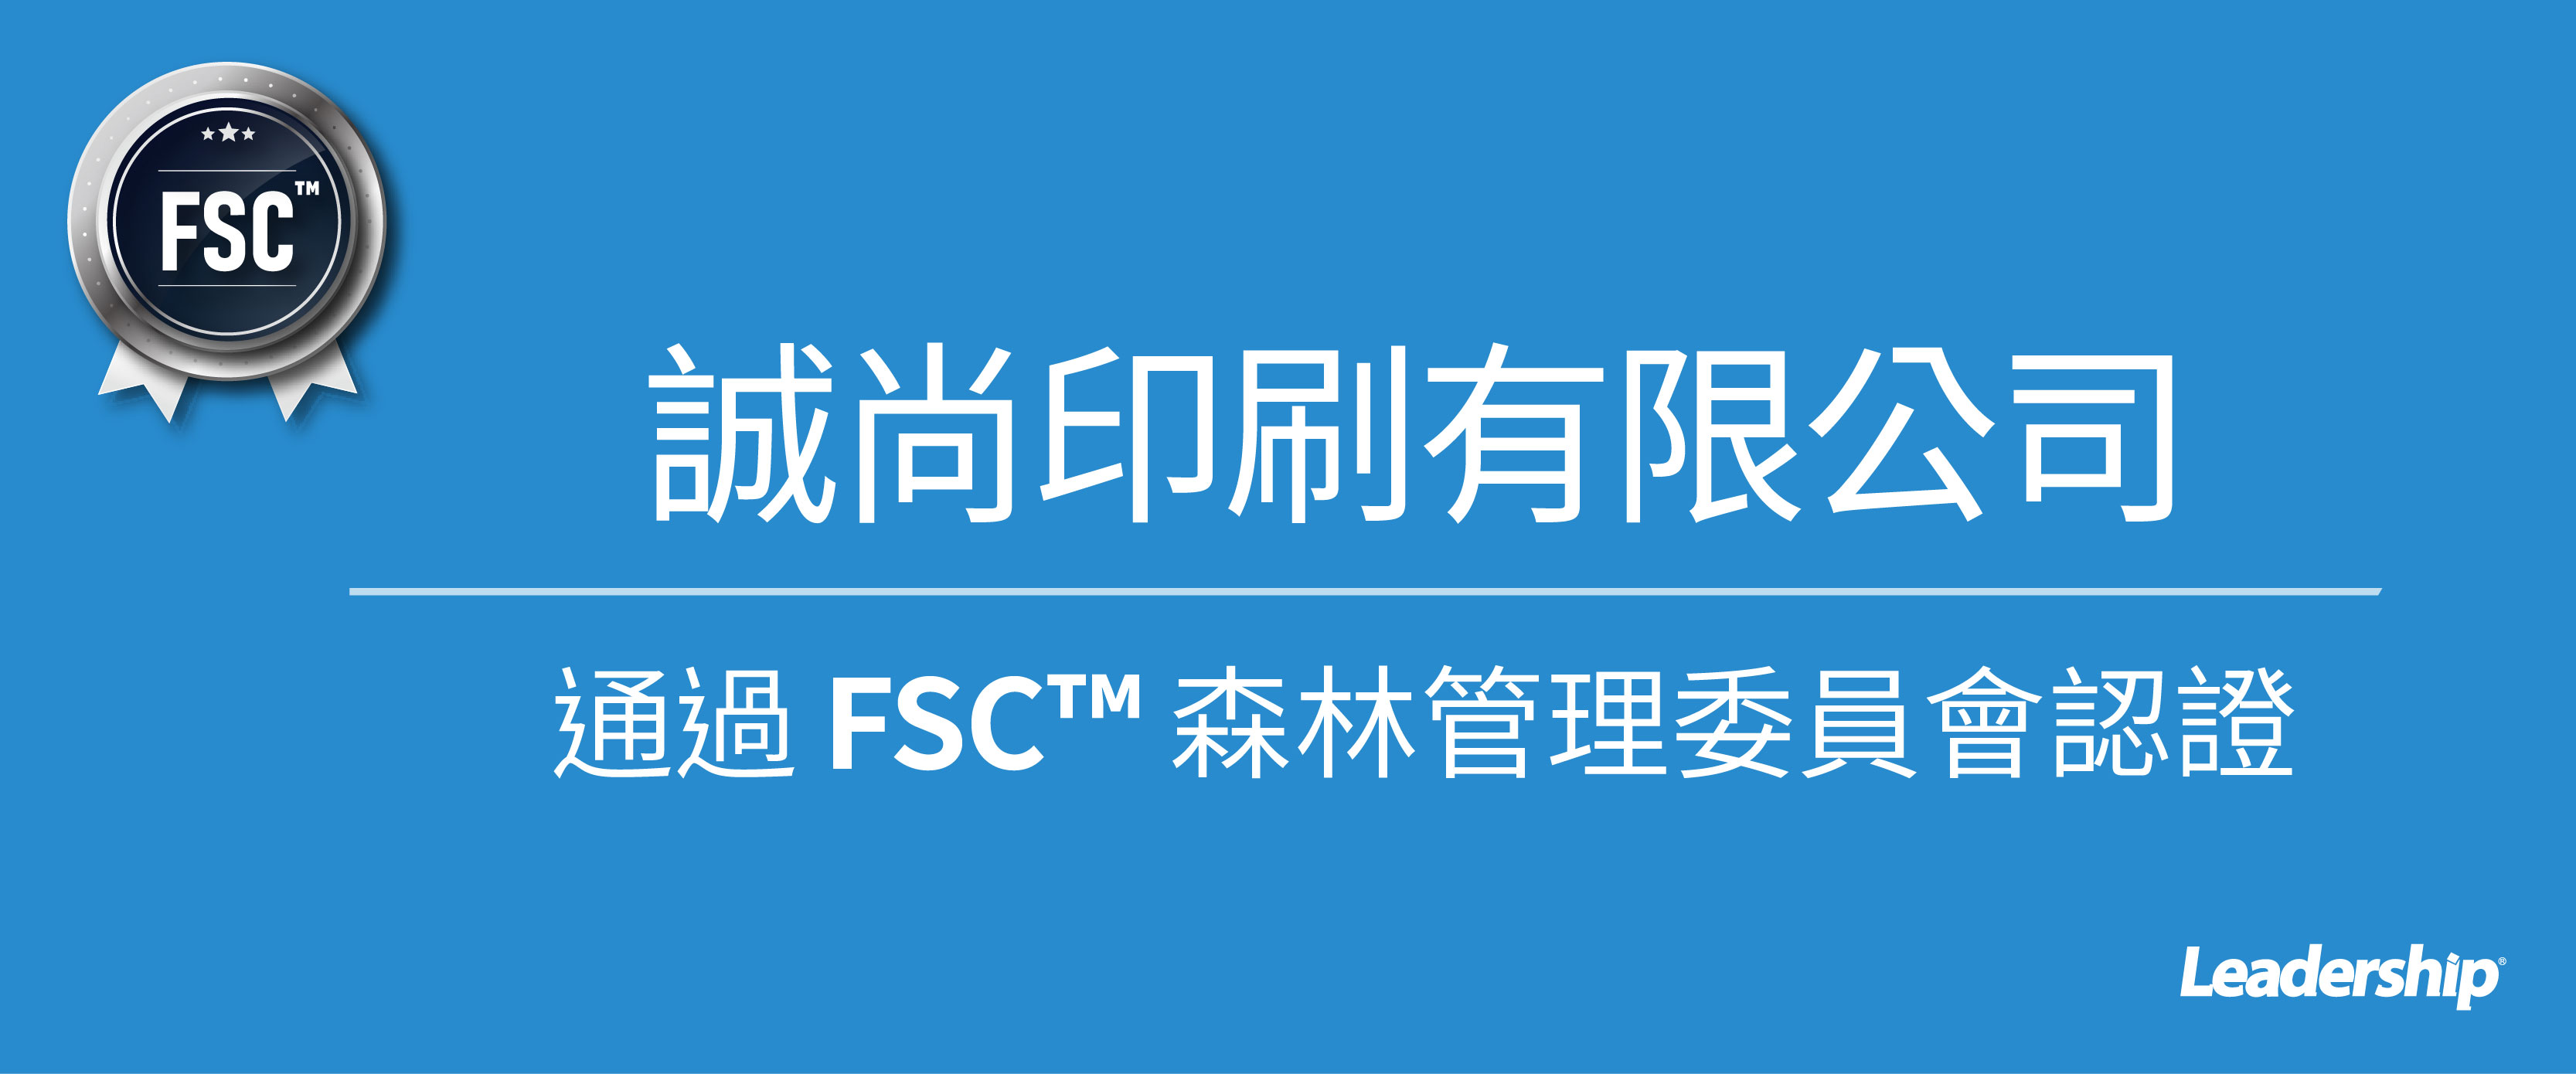 誠尚印刷有限公司 恭喜榮獲 FSC™ 認證